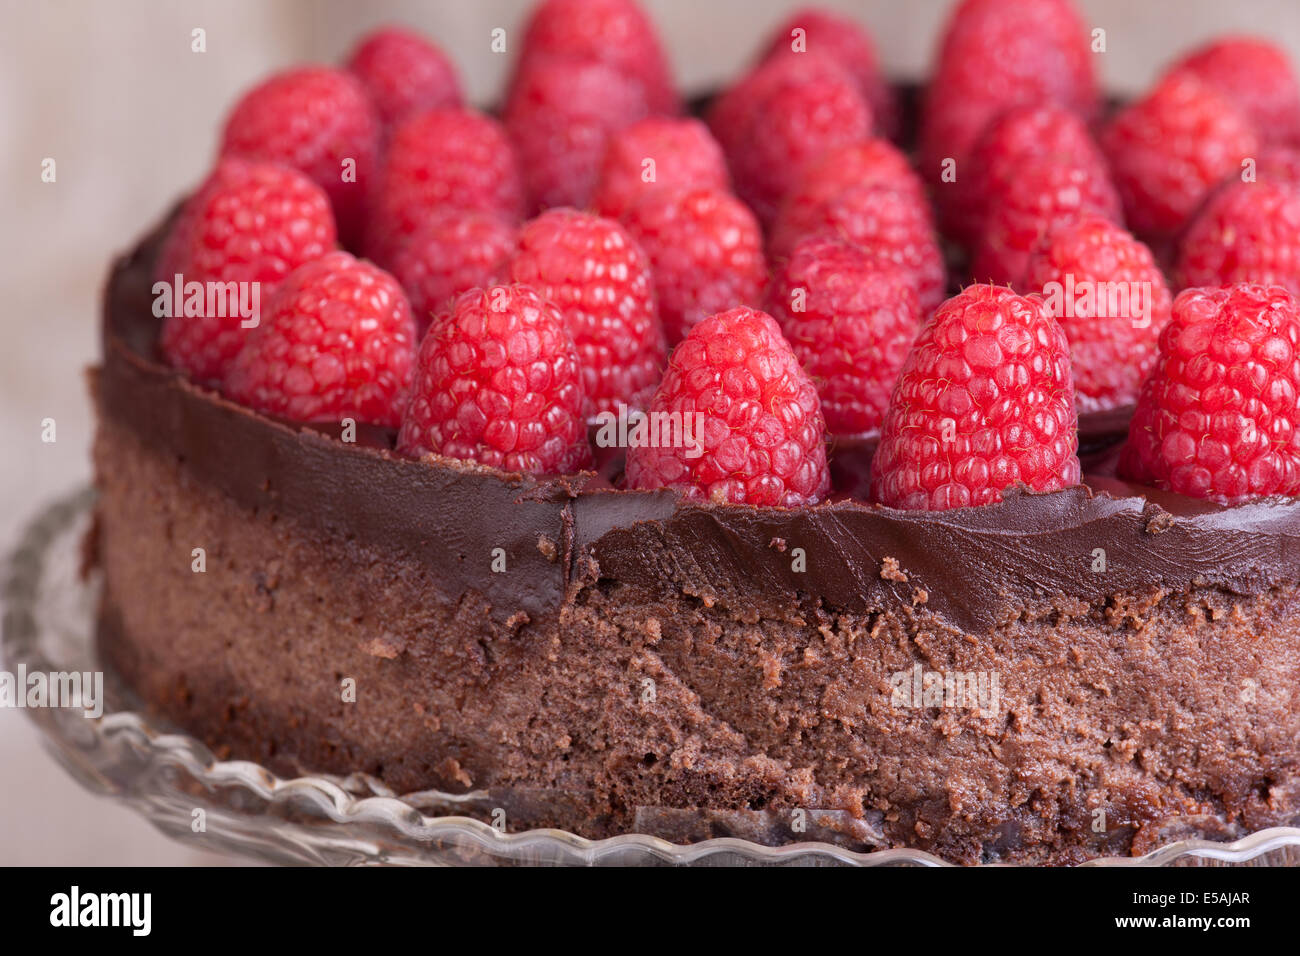 Joli gâteau au chocolat avec des framboises Banque D'Images